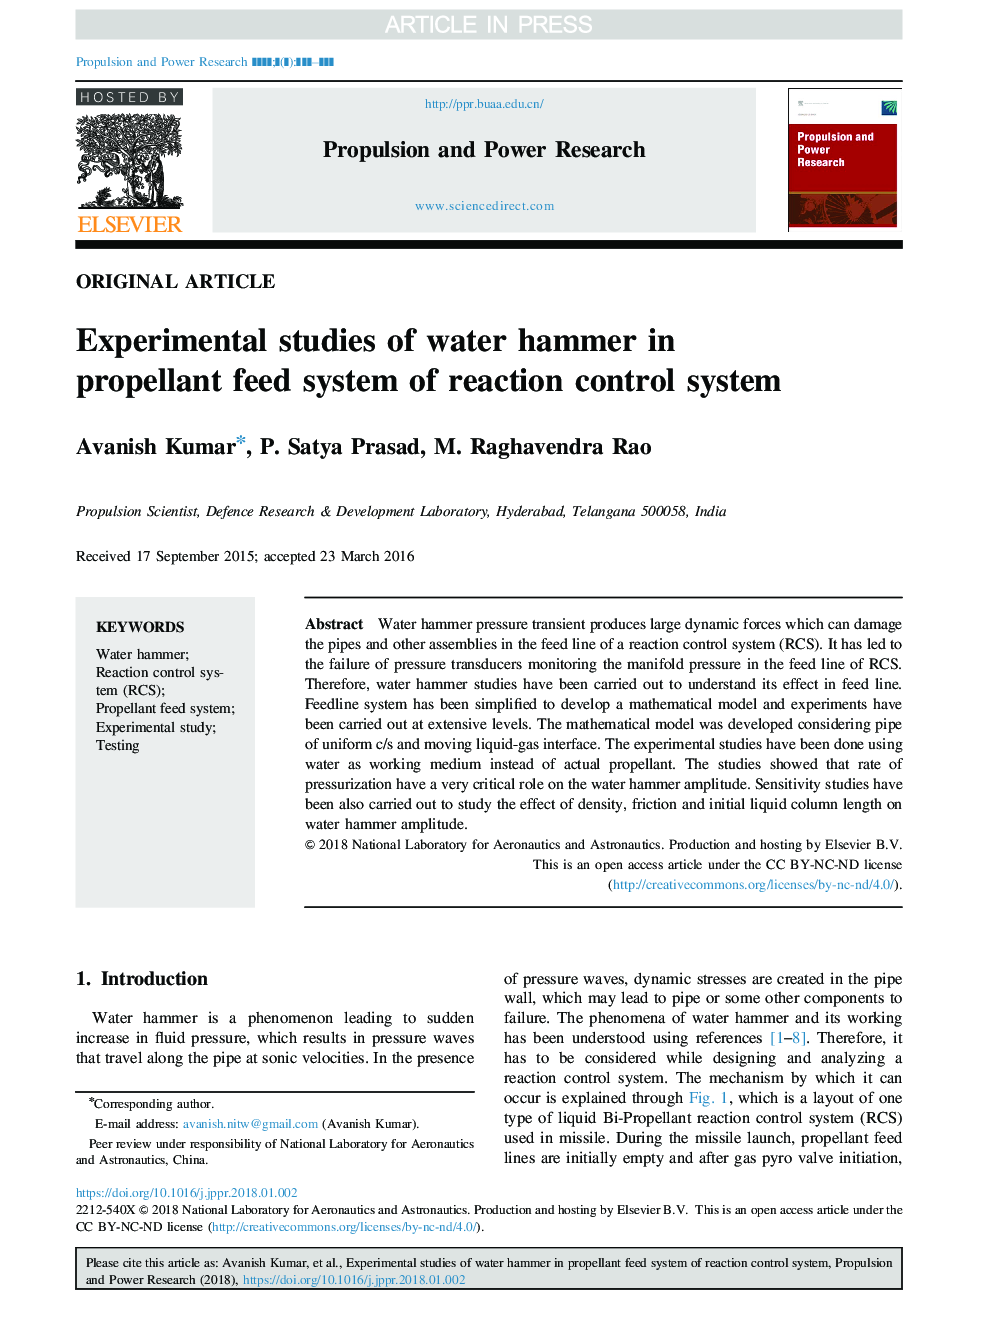 مطالعات تجربی از چکش آب در سیستم تغذیه پروانه ای از سیستم کنترل واکنش 